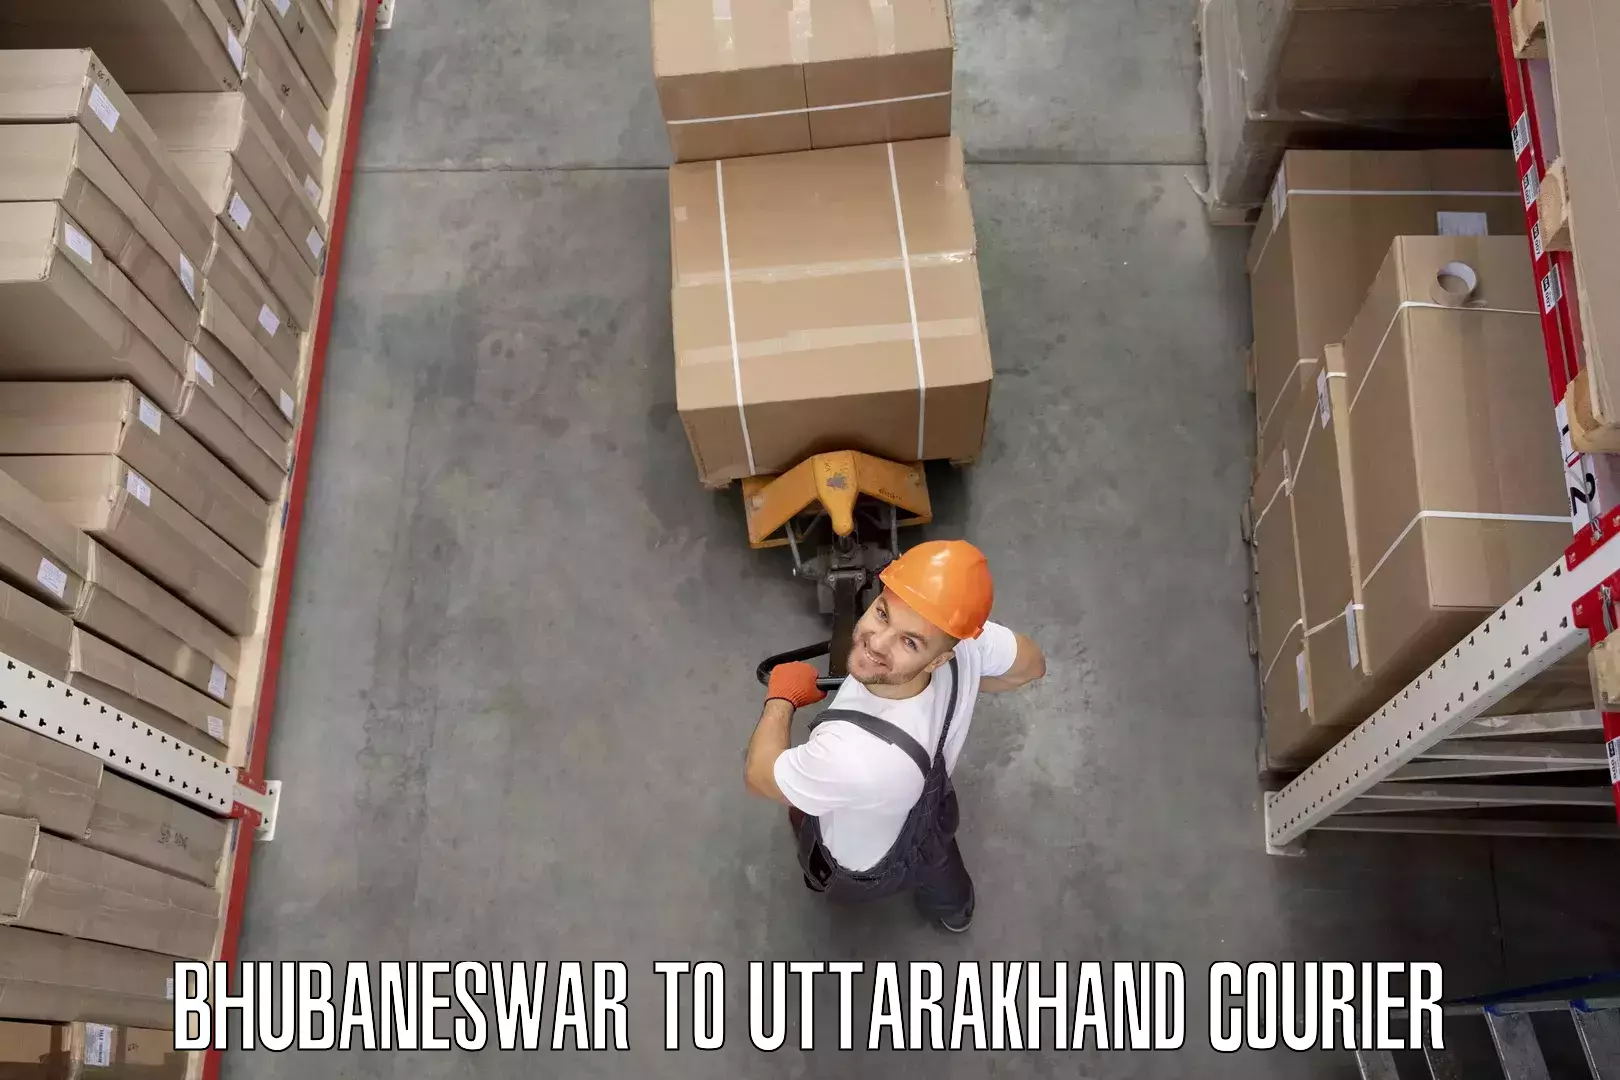 Quality moving company Bhubaneswar to Uttarakhand